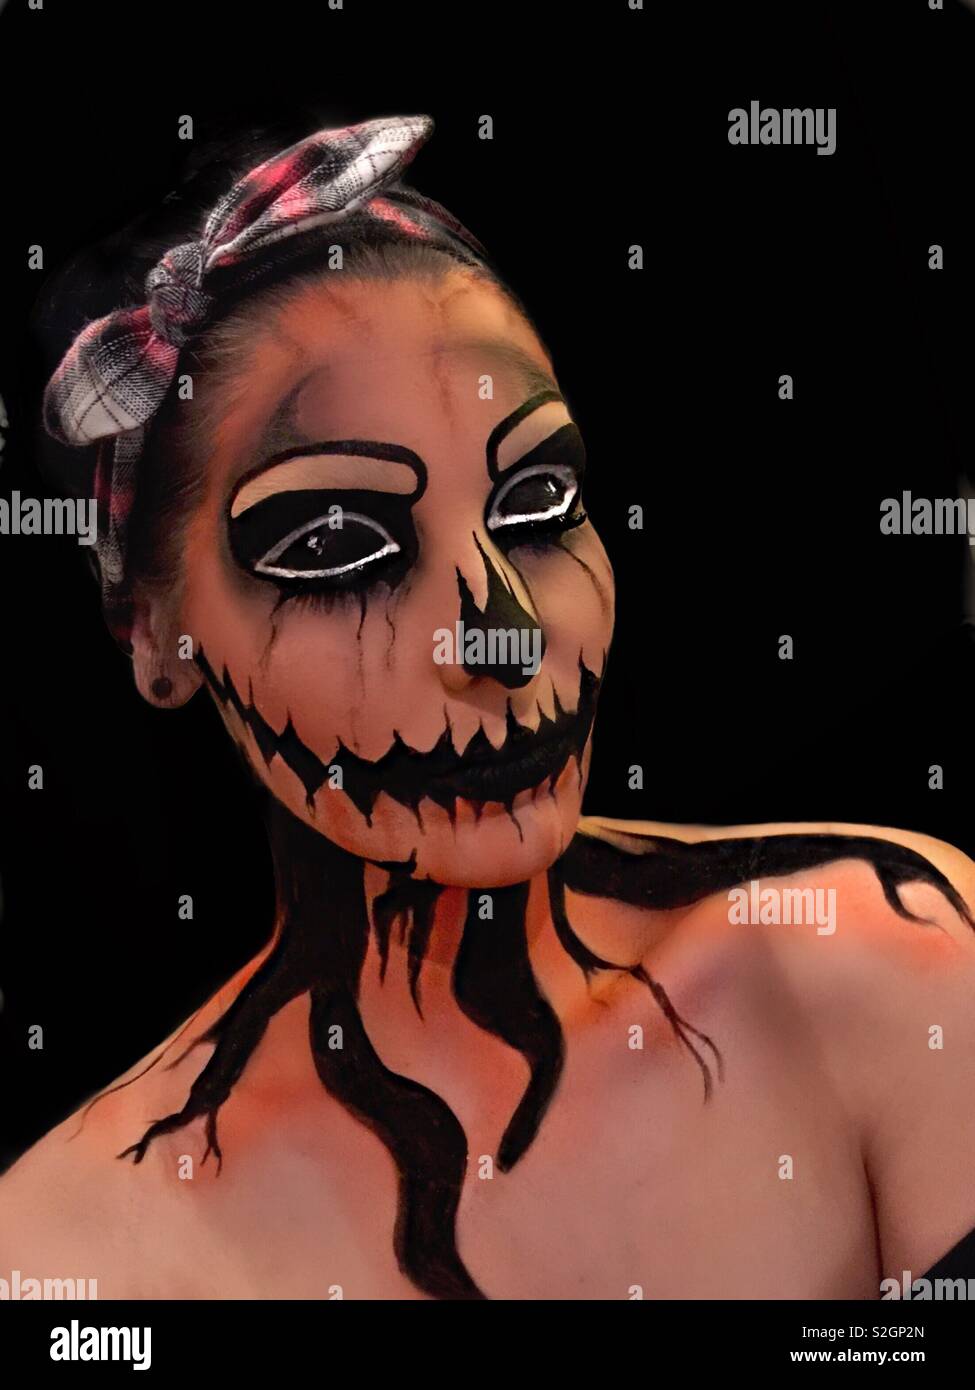 Calabaza de Halloween creativos disfraces maquillaje Fotografía de stock -  Alamy